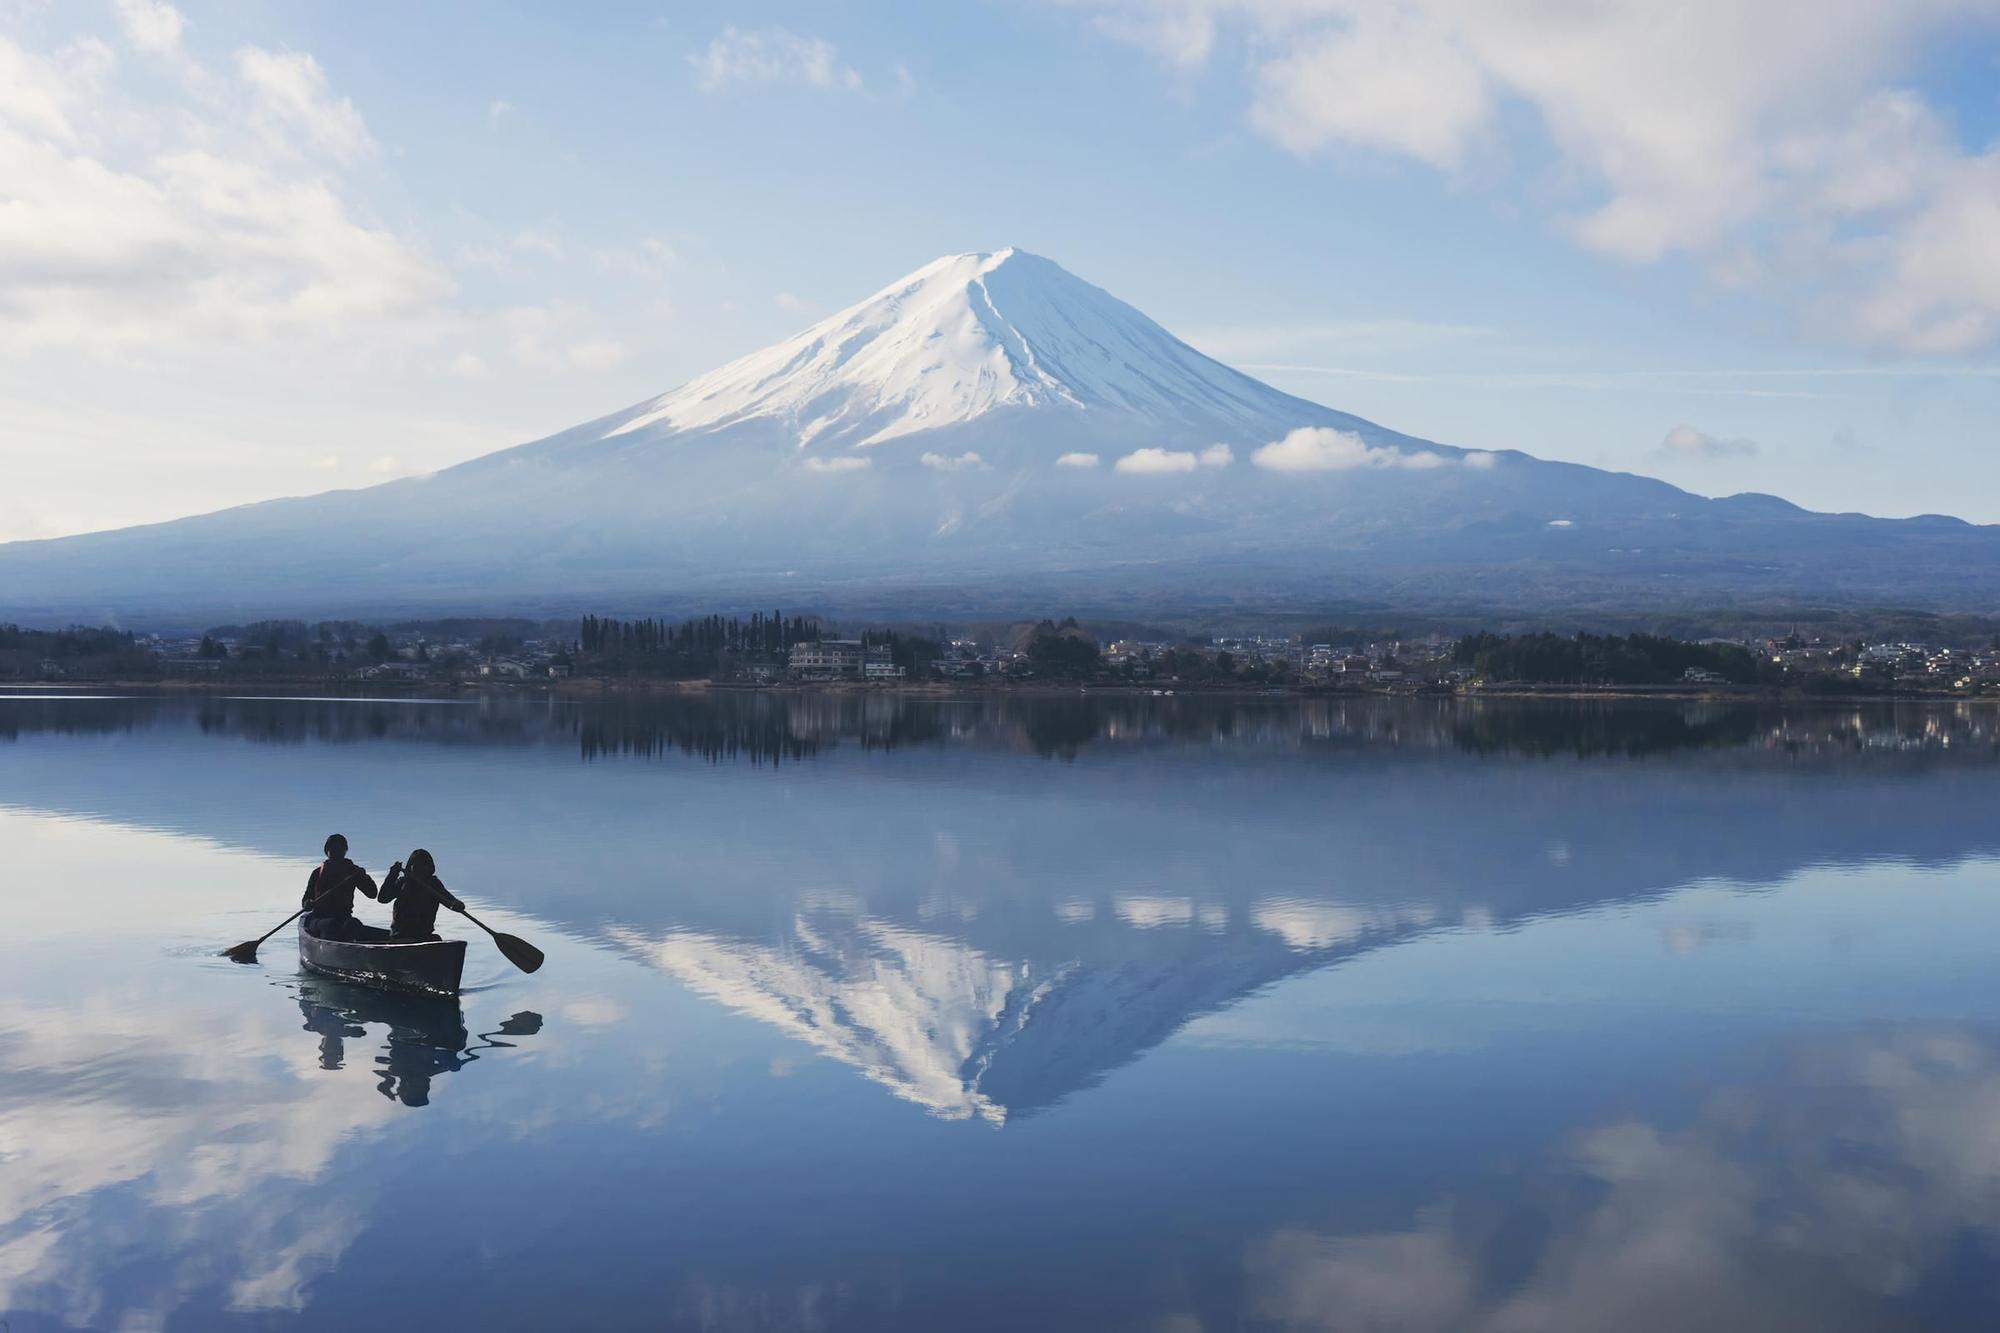 Navegar a los pies del monte Fuji